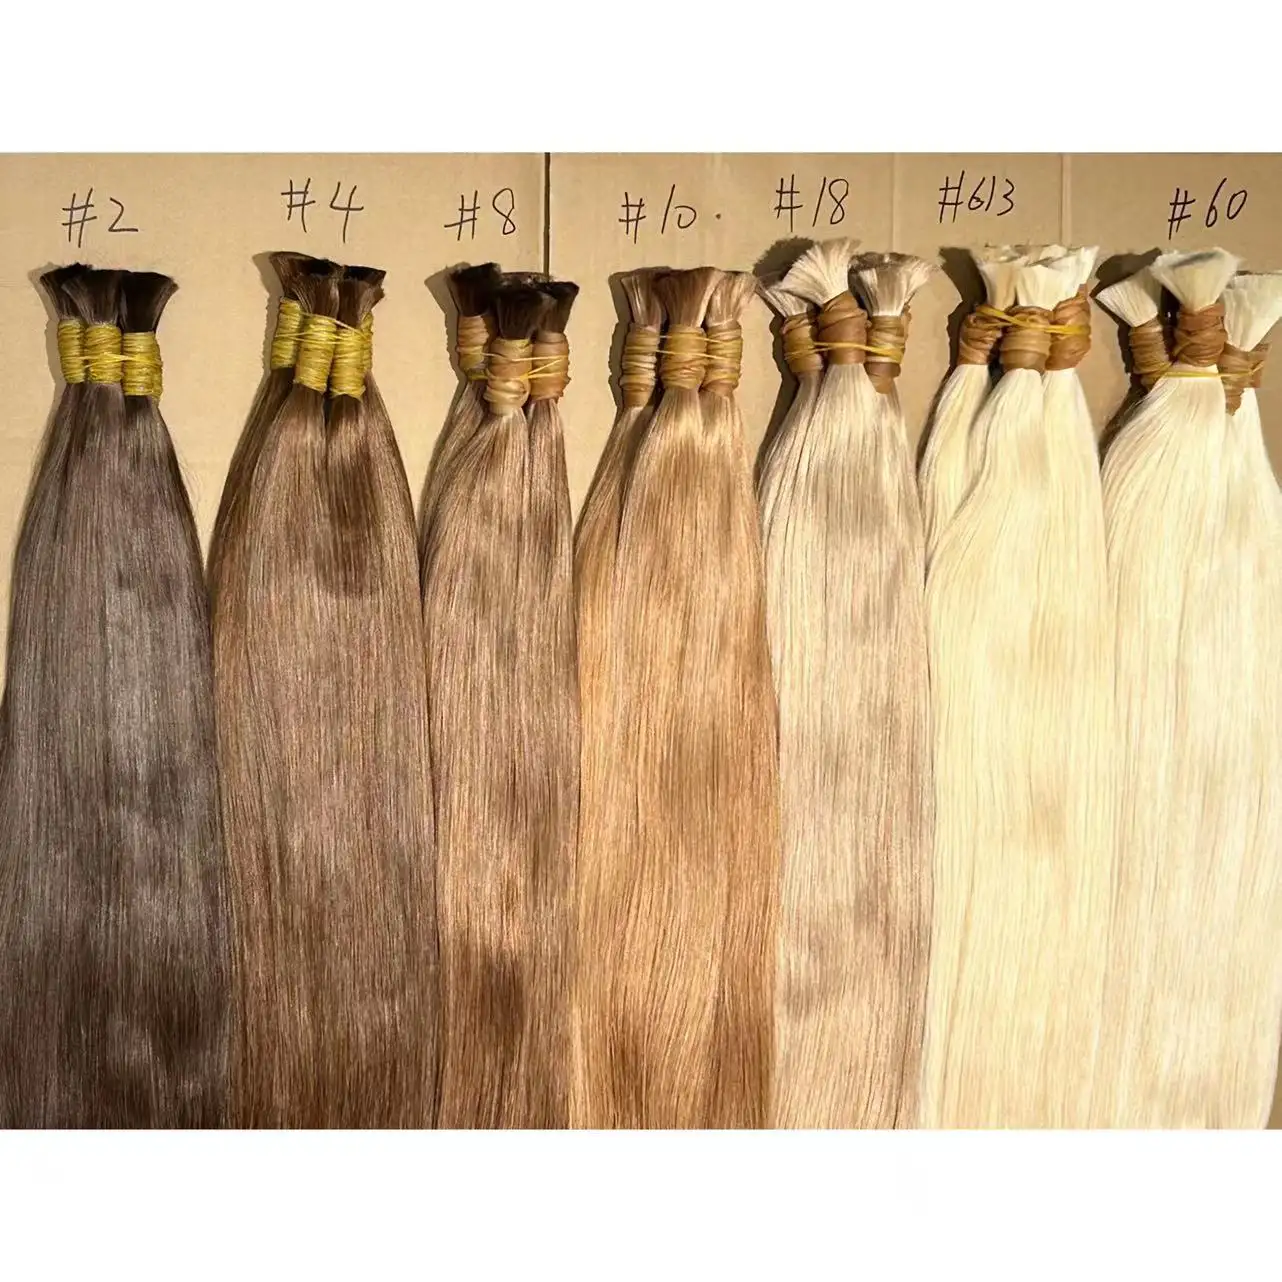 Ghrehair extensiones de cabello humano sang trọng màu nâu frete gratis Para Brasil chưa qua chế biến mịn Remy megahair bán buôn